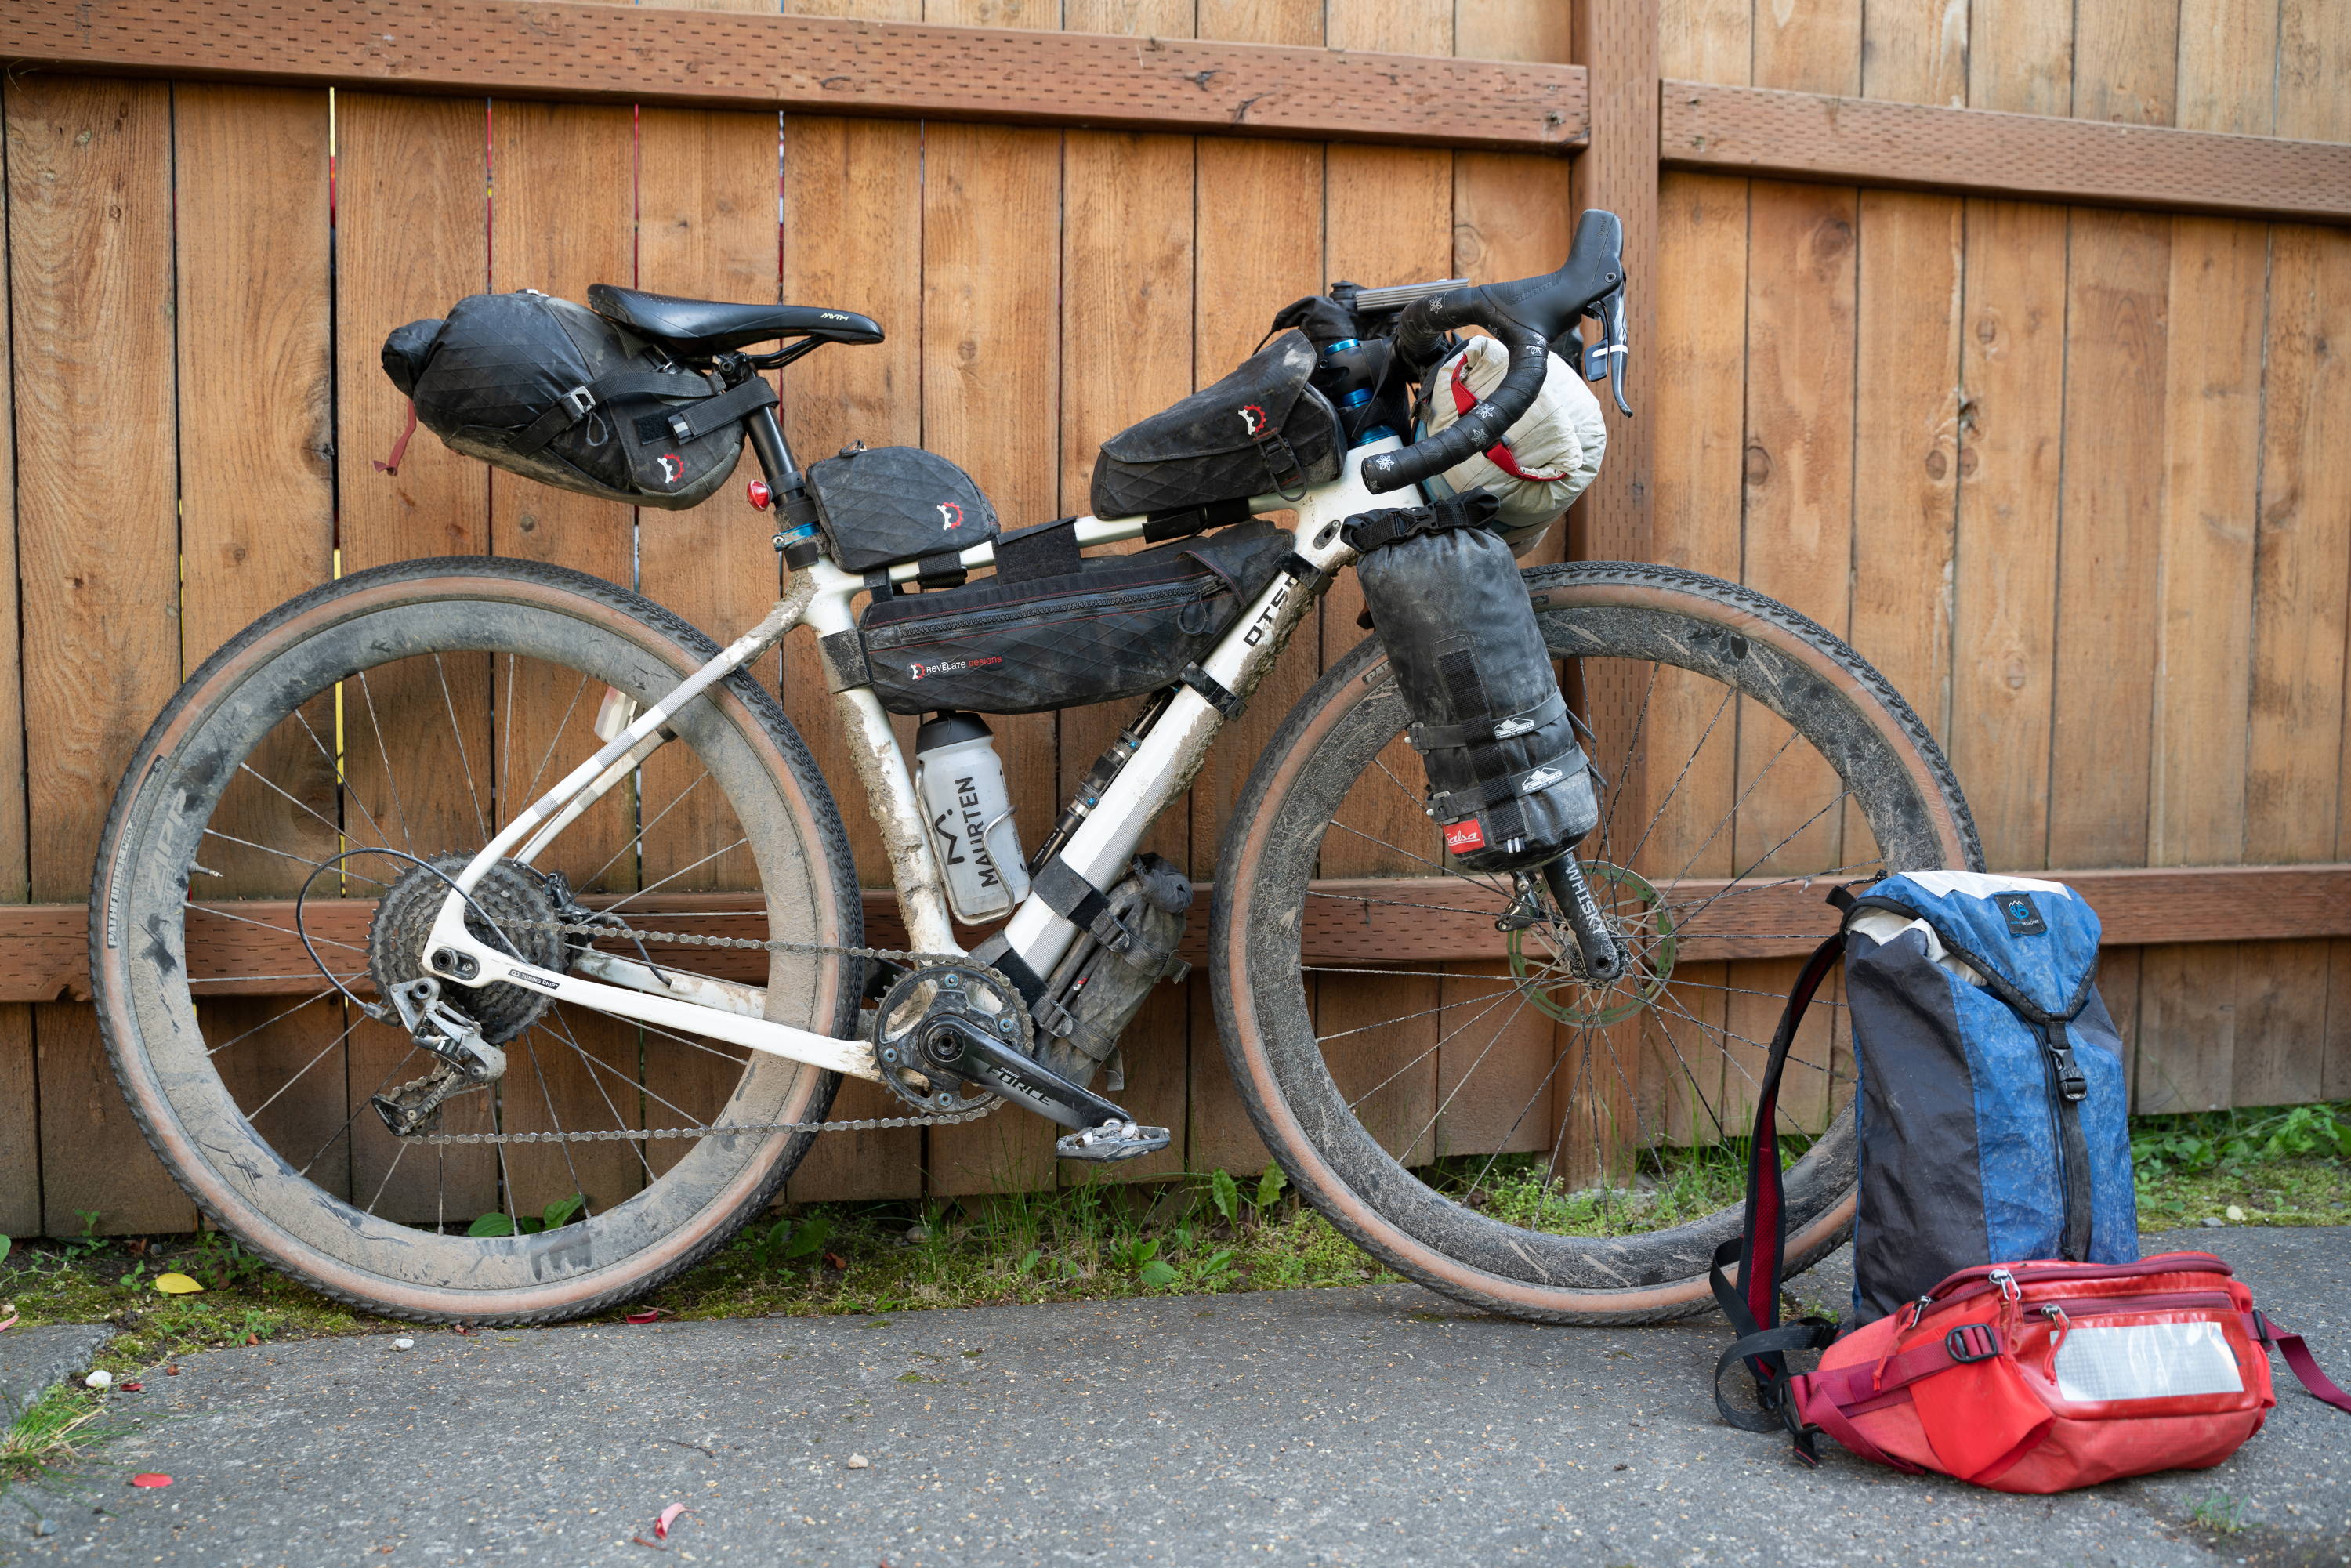 An Otso Cycles Voytek geared up for a bikepacking trek through Alaska.